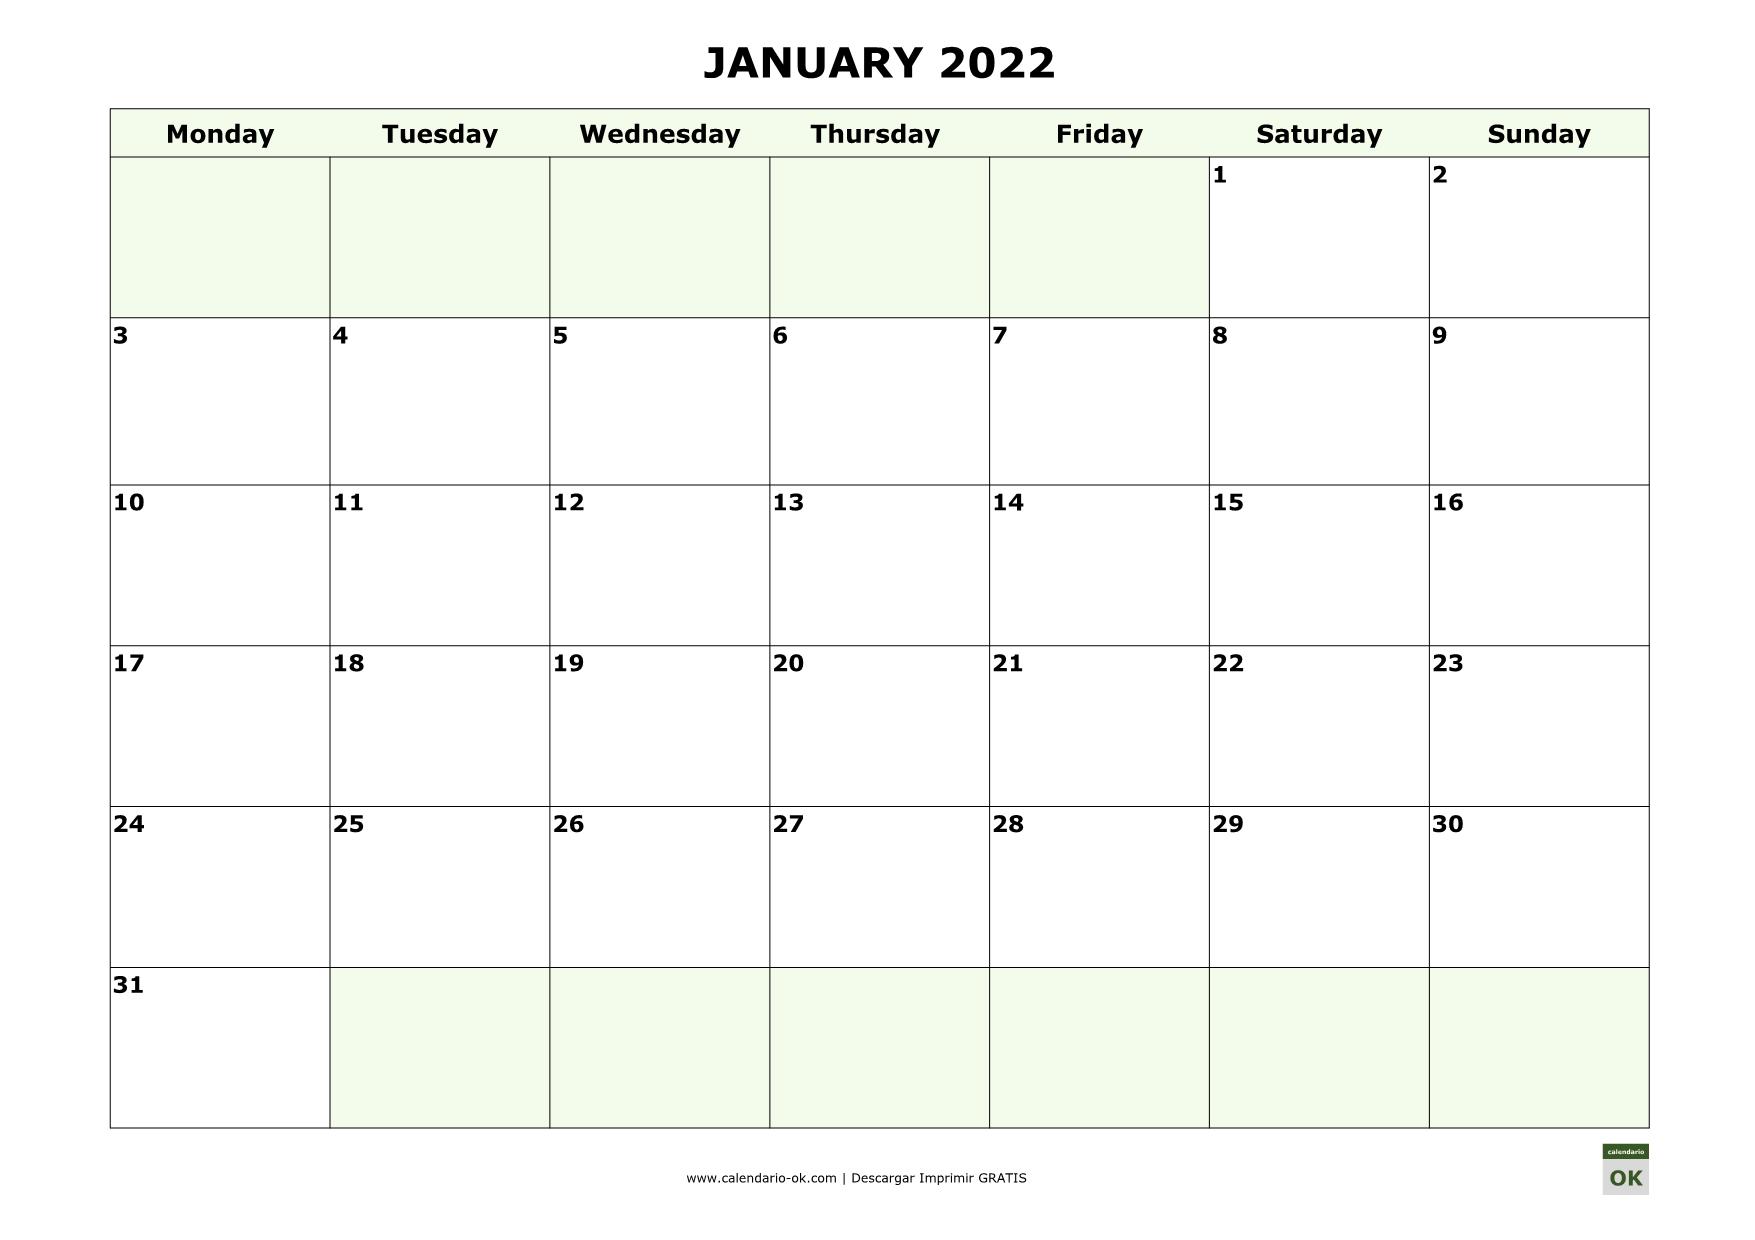 ENERO 2022 calendario en INGLES